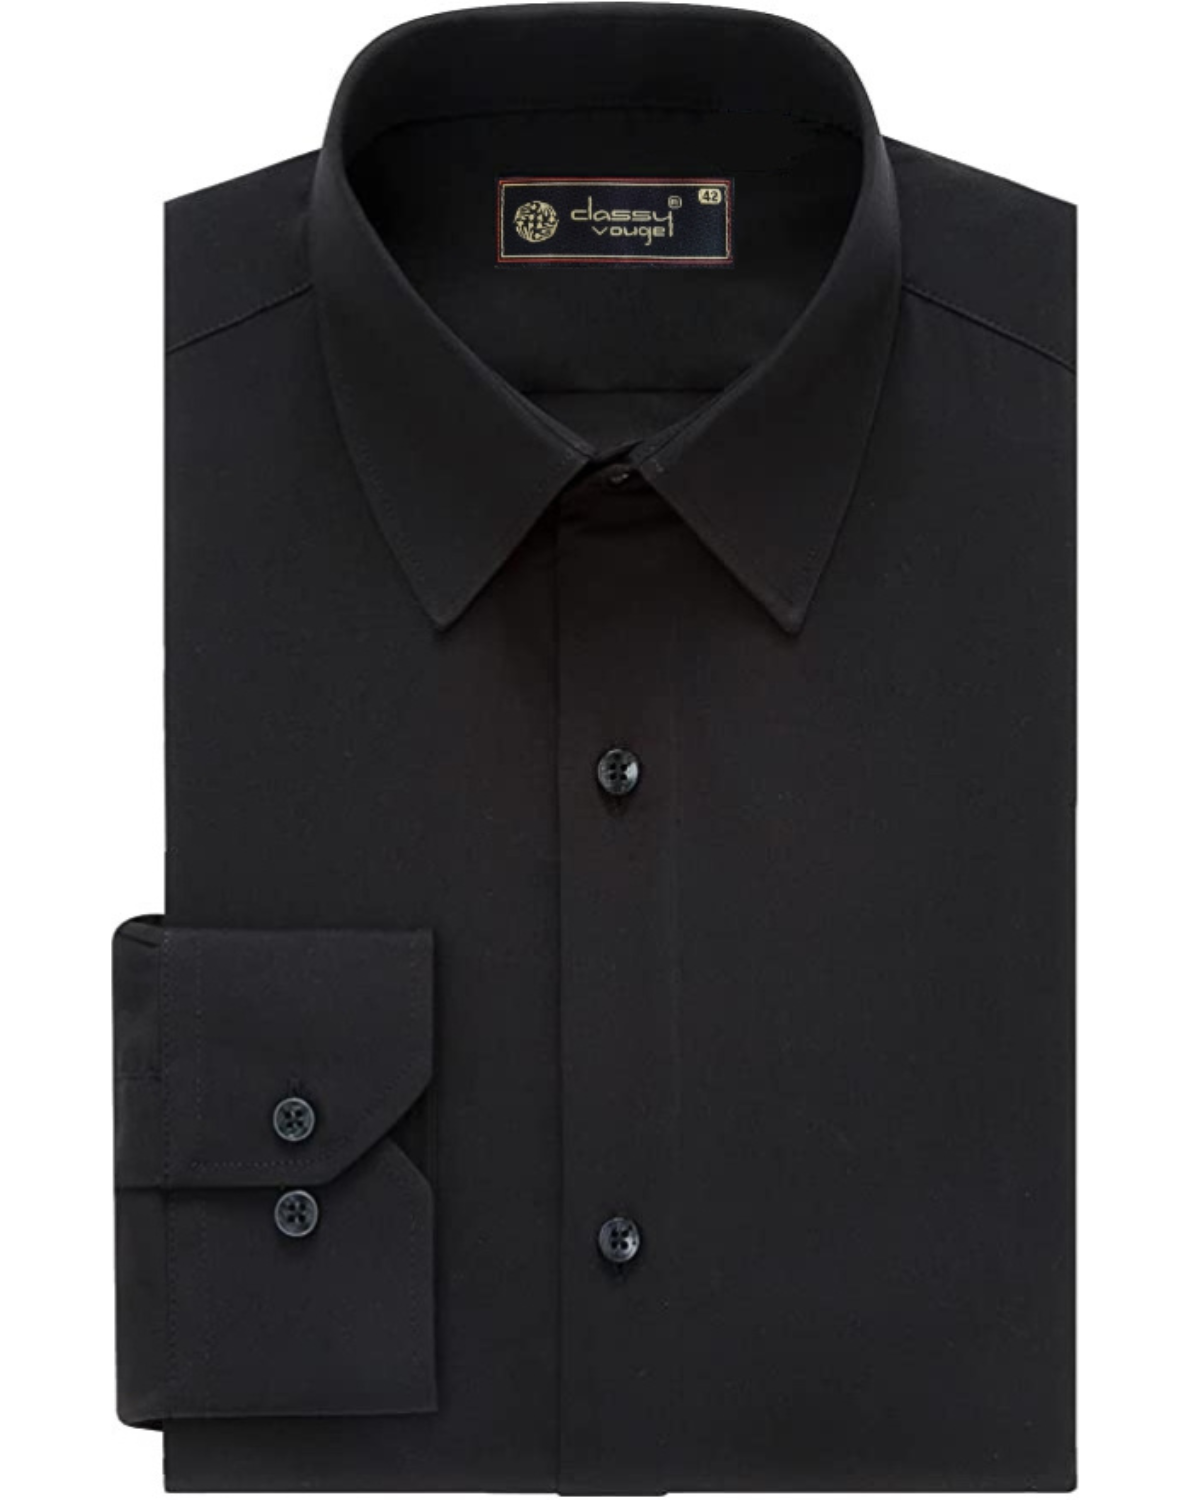 Black Plain Formal Full Sleeve Shirt For Men – Classy Vouge